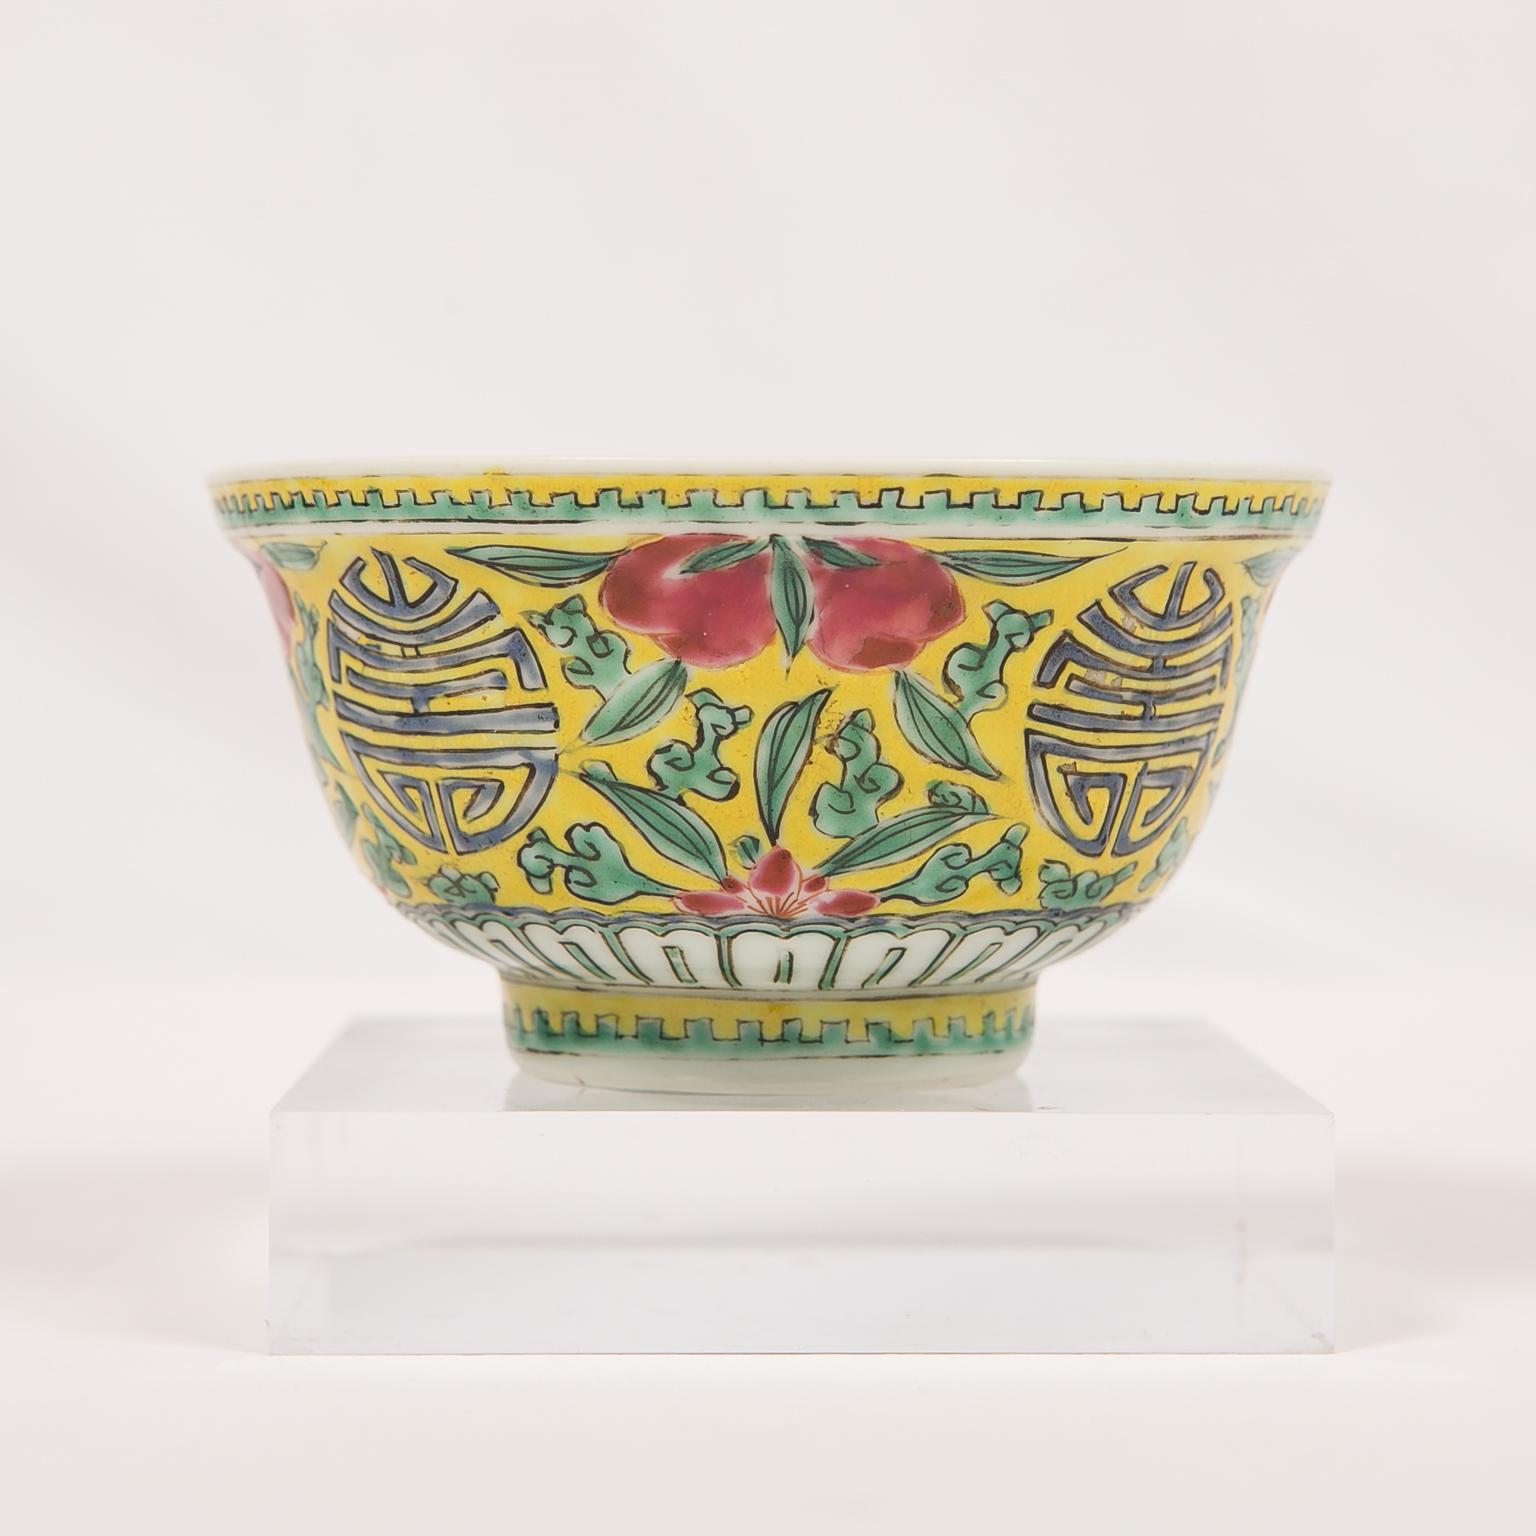 Wir freuen uns, dieses kleine Juwel der chinesischen Porzellankunst anbieten zu können. 
Diese Schale aus der späten Qing-Dynastie des 19. Jahrhunderts ist außen mit Pflanzen, Blumen und dem chinesischen Schriftzeichen 